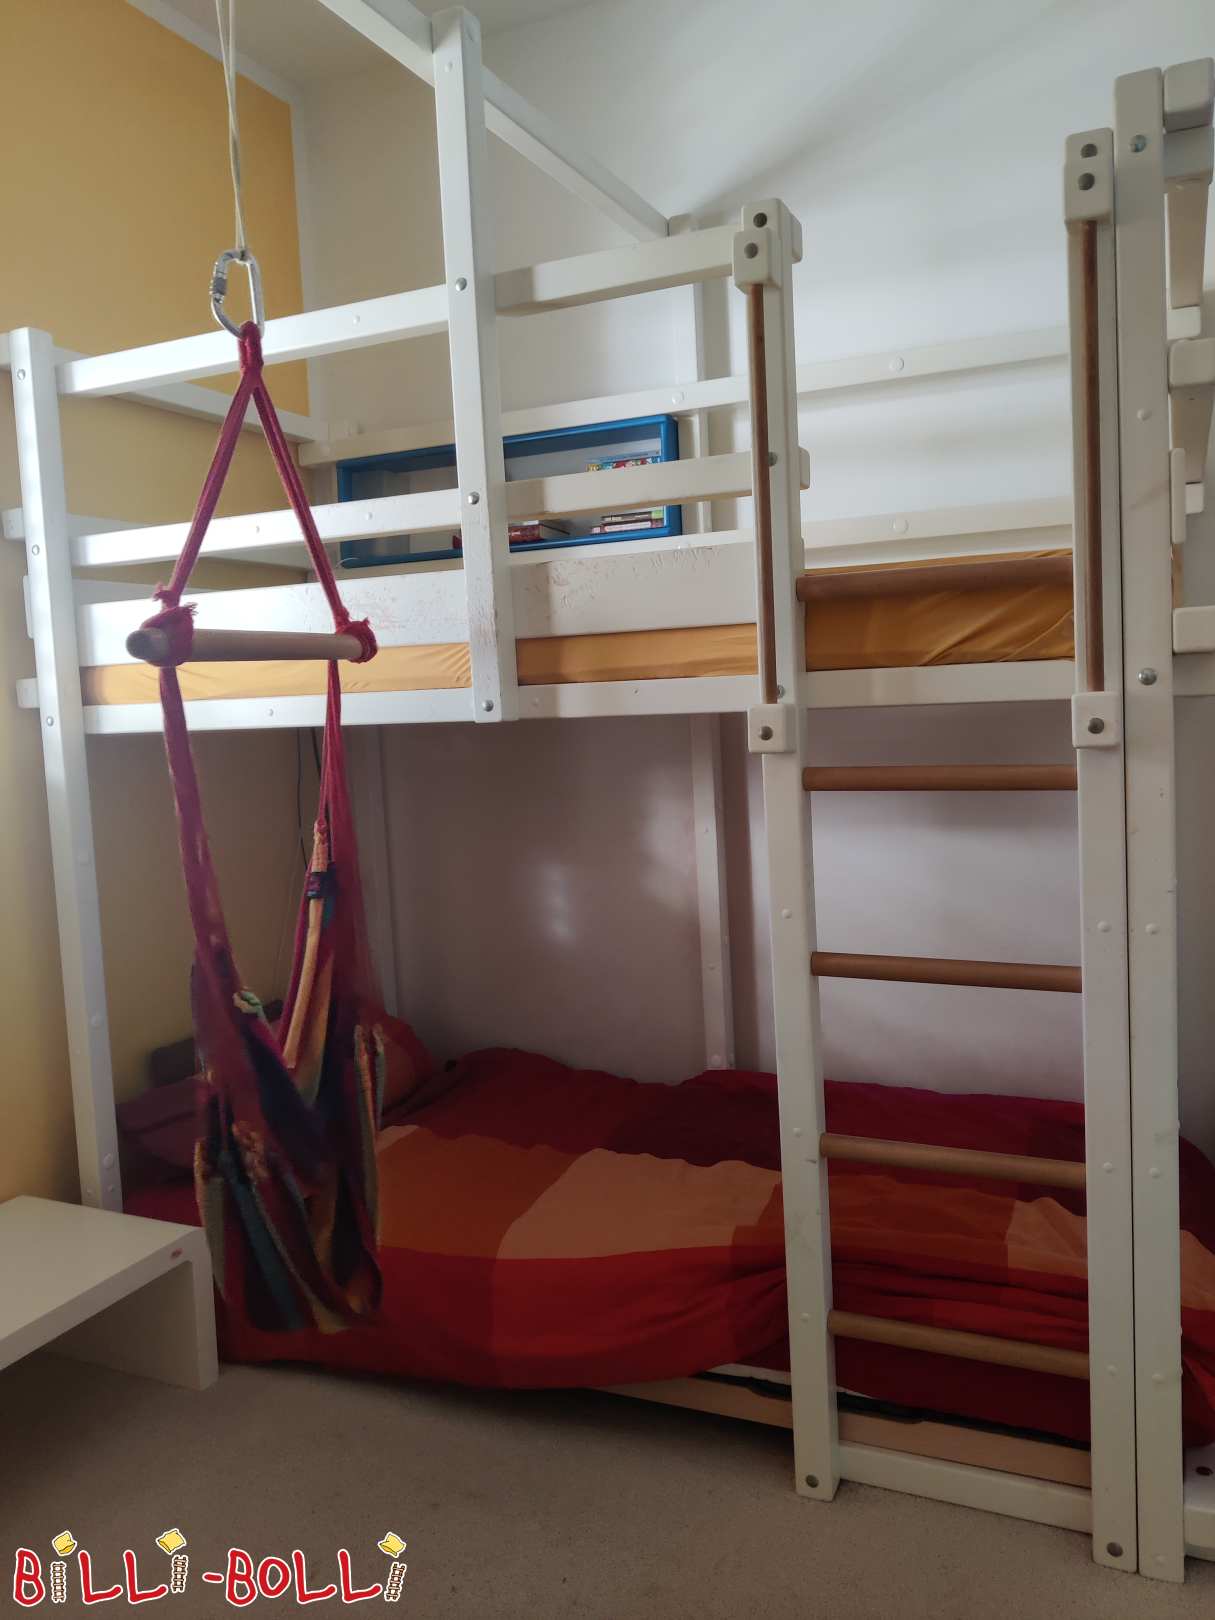 मचान बिस्तर जो सफेद में बच्चे के साथ बढ़ता है / बर्लिन के पास (श्रेणी: मचान बिस्तर जो बच्चे के साथ बढ़ता है प्रयुक्त)